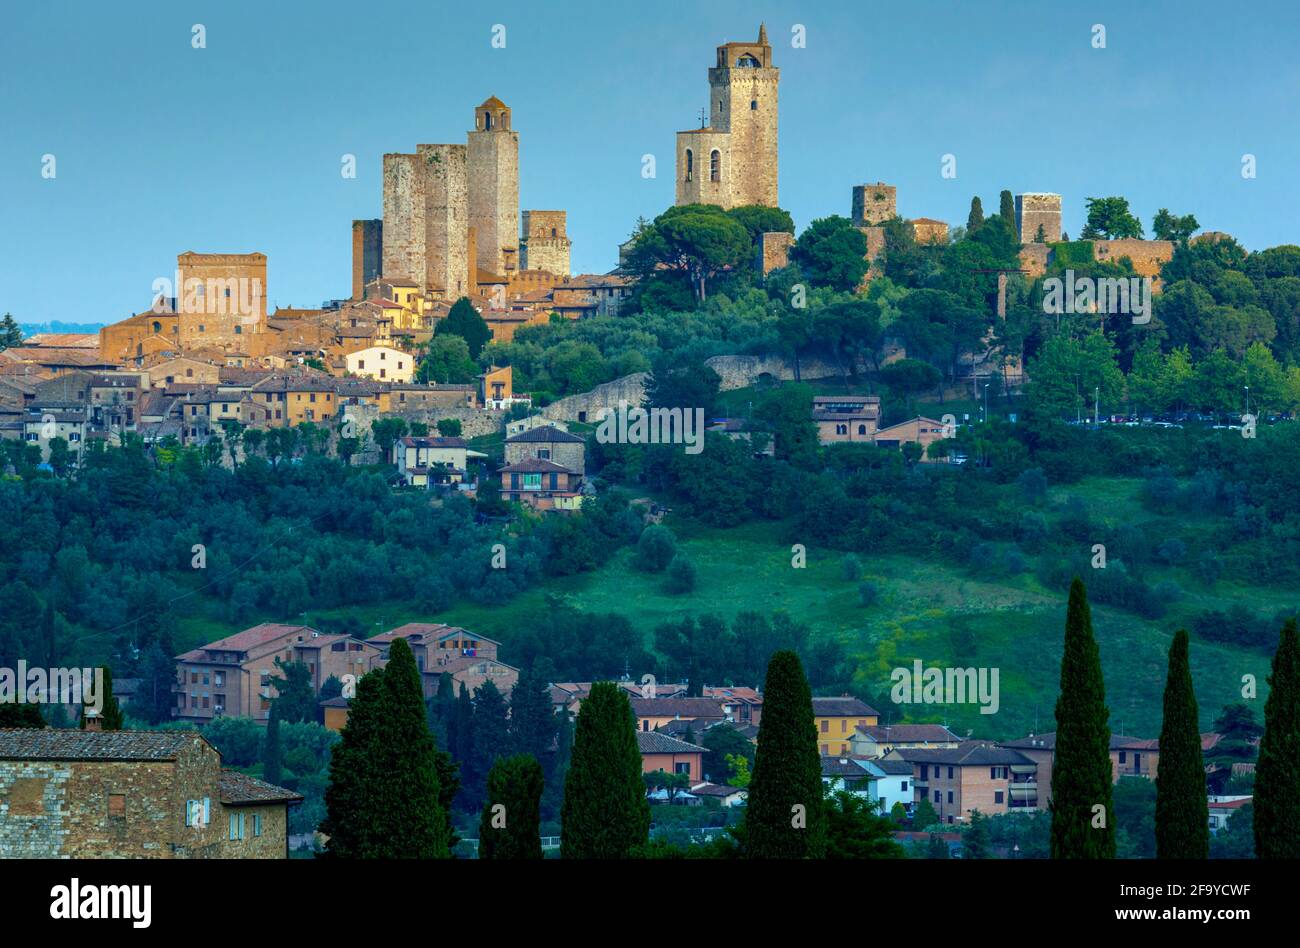 San Gimignano, Provinz Siena, Toskana, Italien. Gesamtansicht. Das historische Zentrum von San Gimignano ist ein UNESCO-Weltkulturerbe. Stockfoto